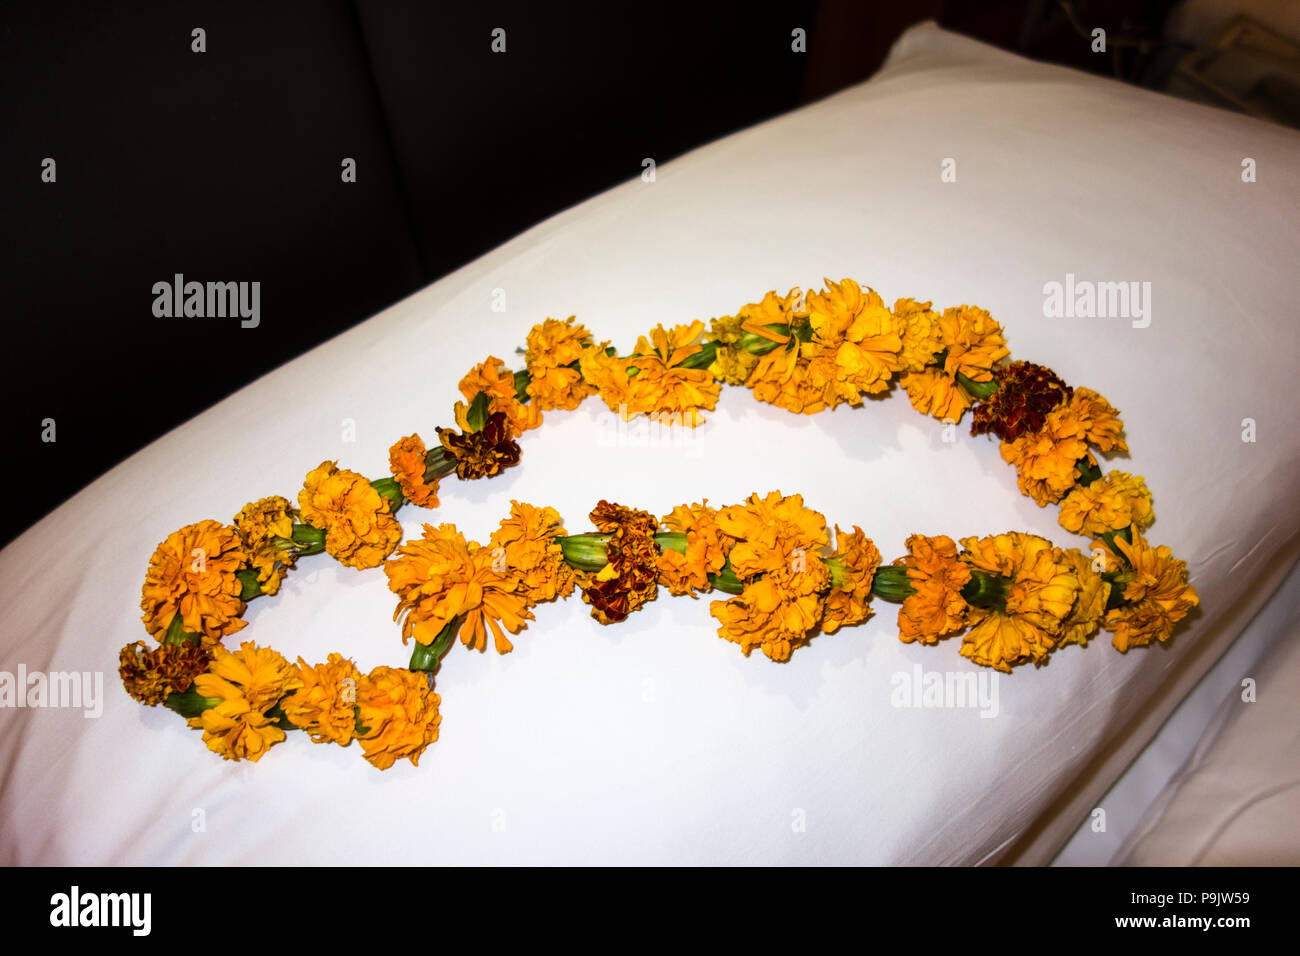 Indiano ghirlanda di fiori per onorare gli ospiti su un cuscino in un albergo a New Delhi, Delhi, India Foto Stock